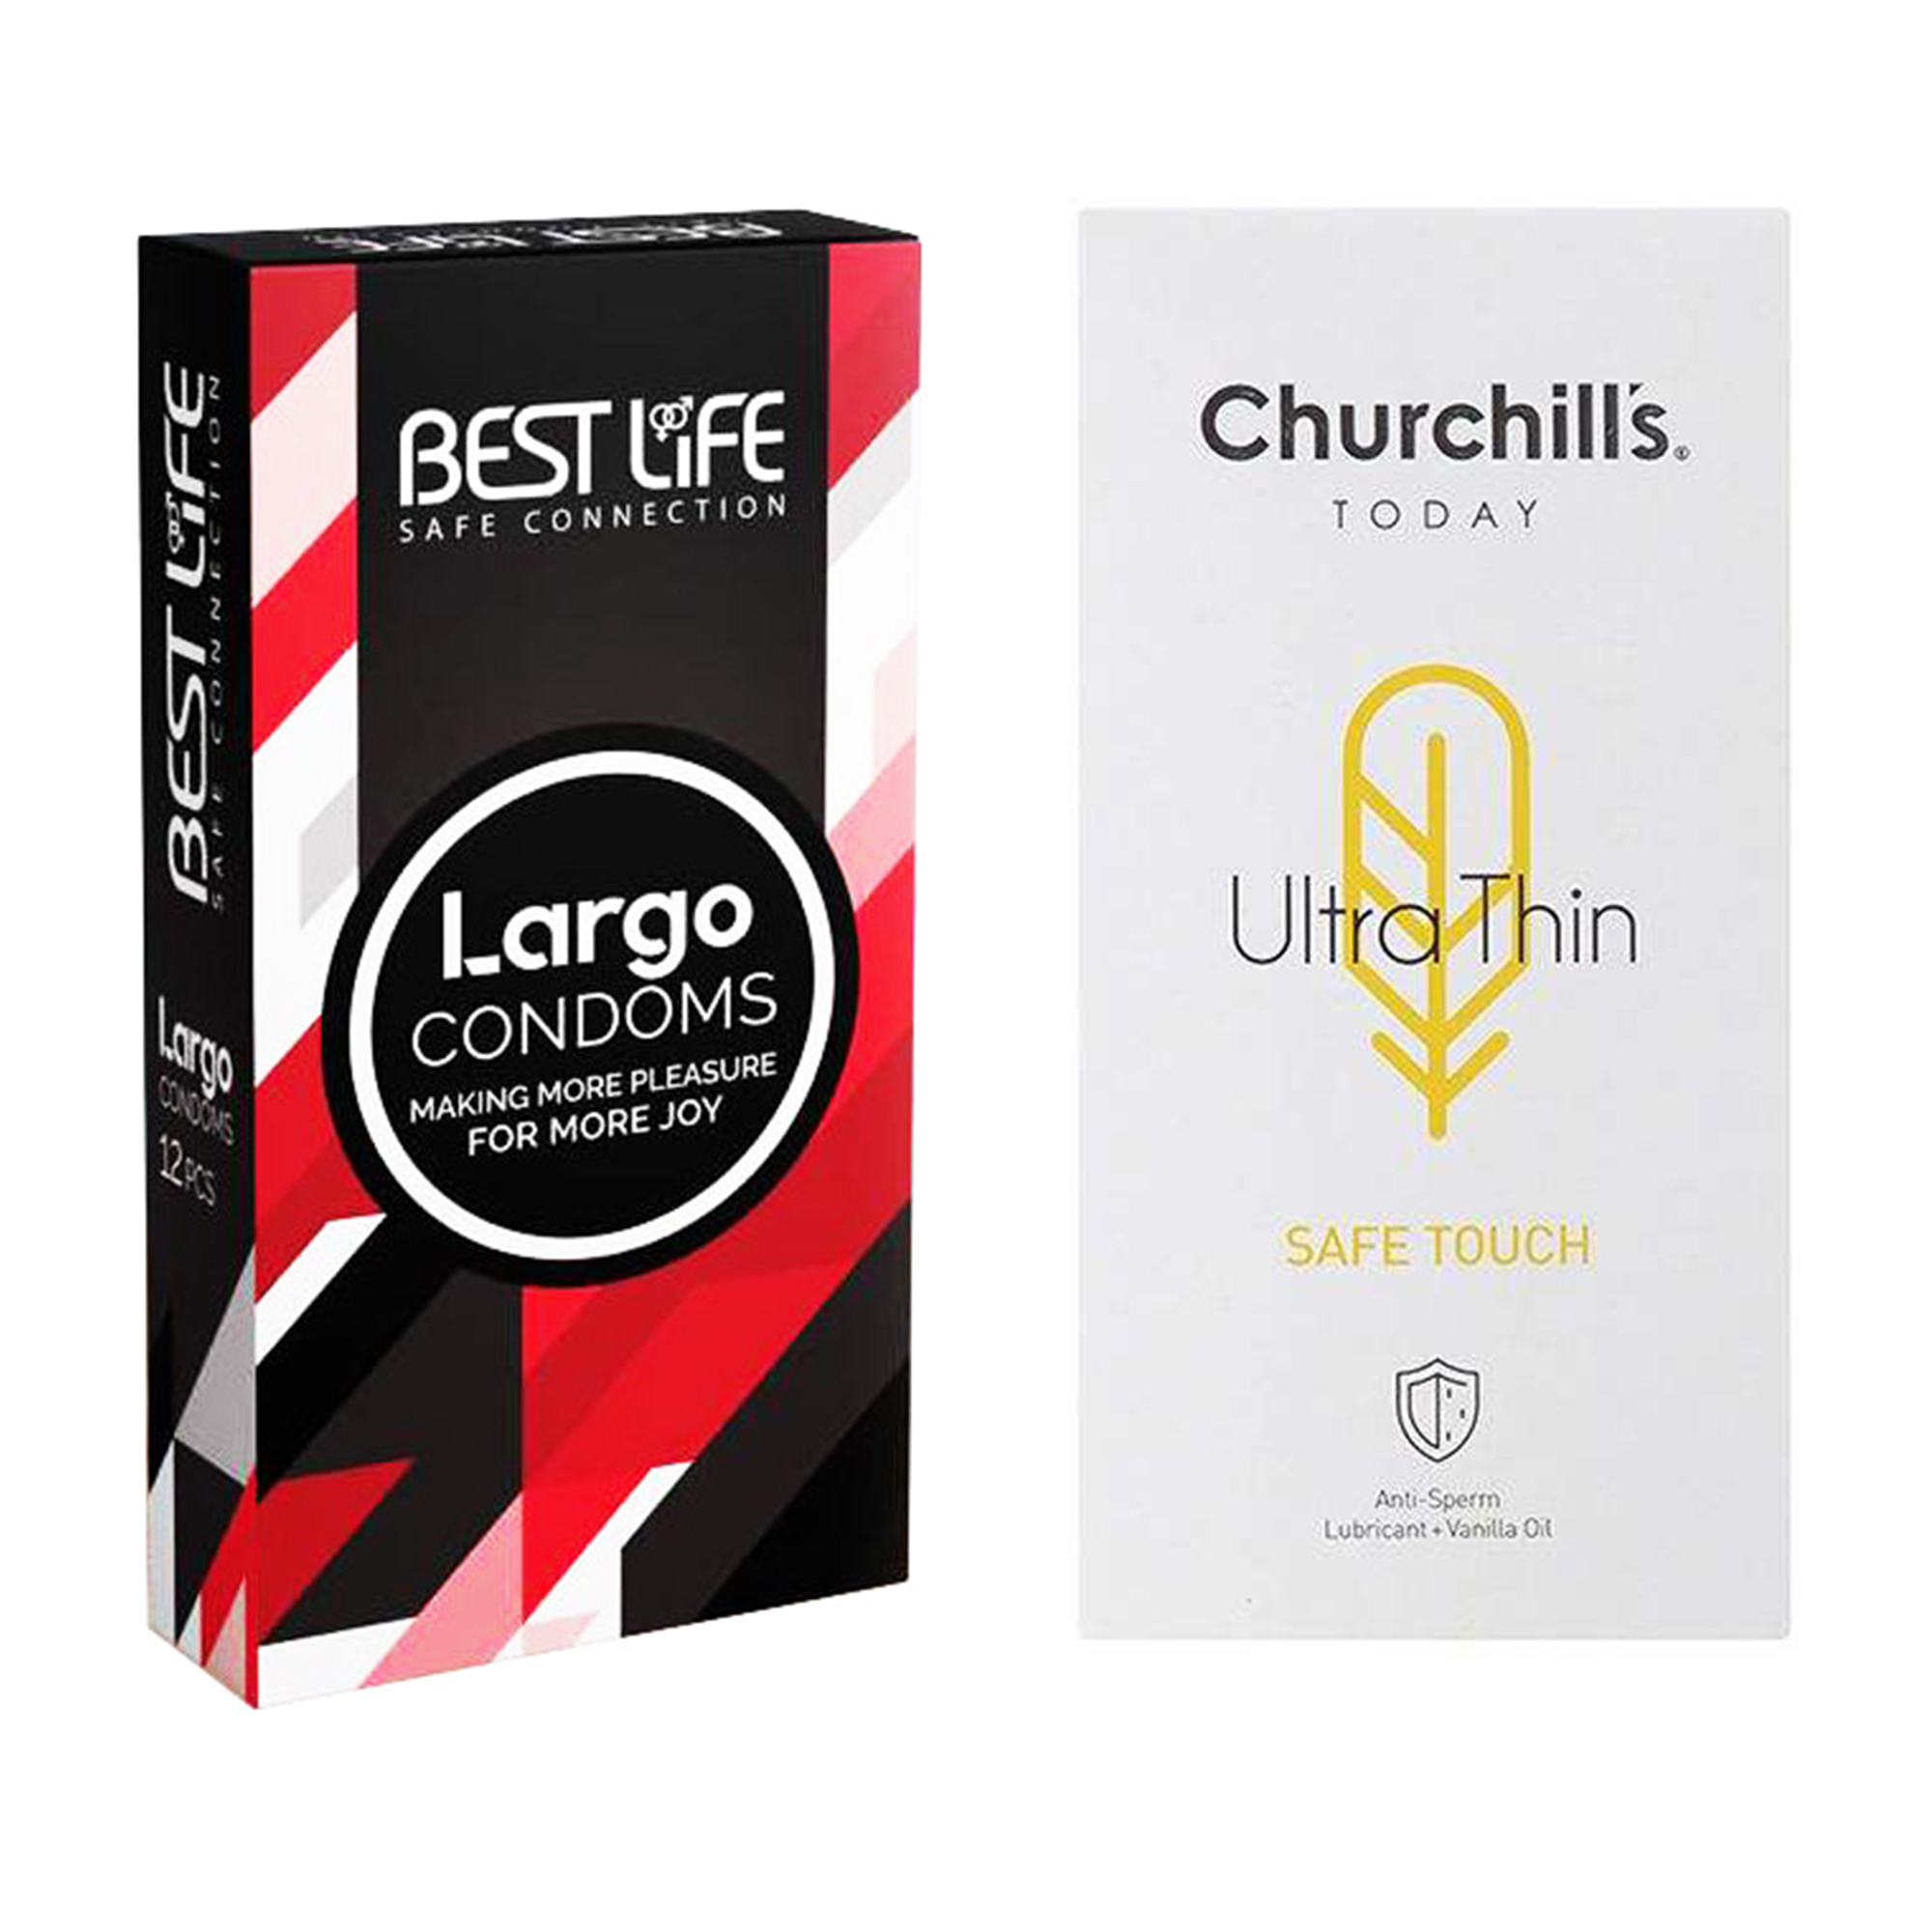 کاندوم چرچیلز مدل Safe Touch بسته 12 عددی به همراه کاندوم بست لایف مدل Largo بسته 12 عددی